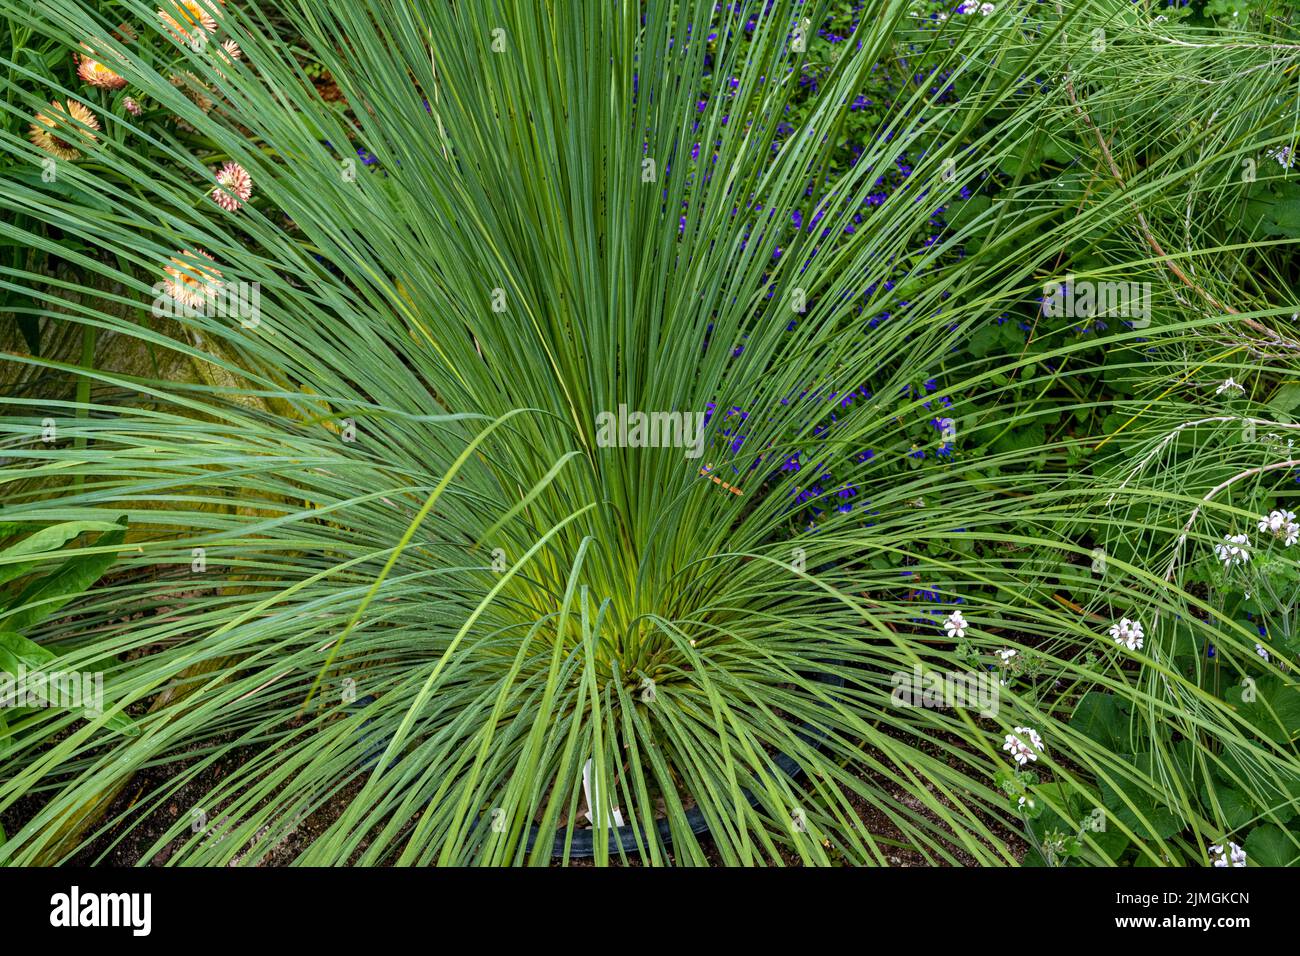 Los árboles de hierba (Xanthorrhoea preissii) conocidos como balga, es una especie de monocultivo perenne muy extendida en el suroeste de Australia. Foto de stock